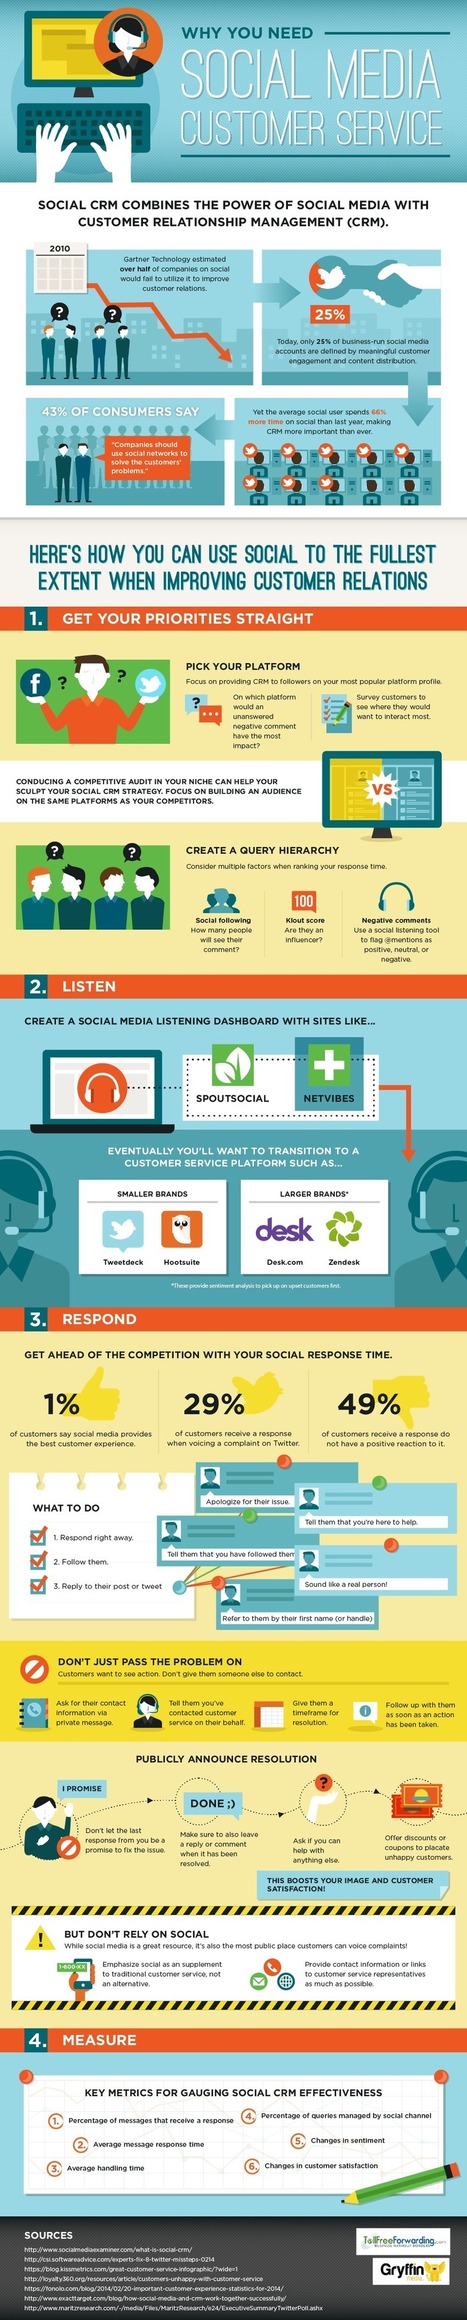 Por qué atención al cliente en Redes Sociales #infografia #infographic #socialmedia #marketing | Seo, Social Media Marketing | Scoop.it